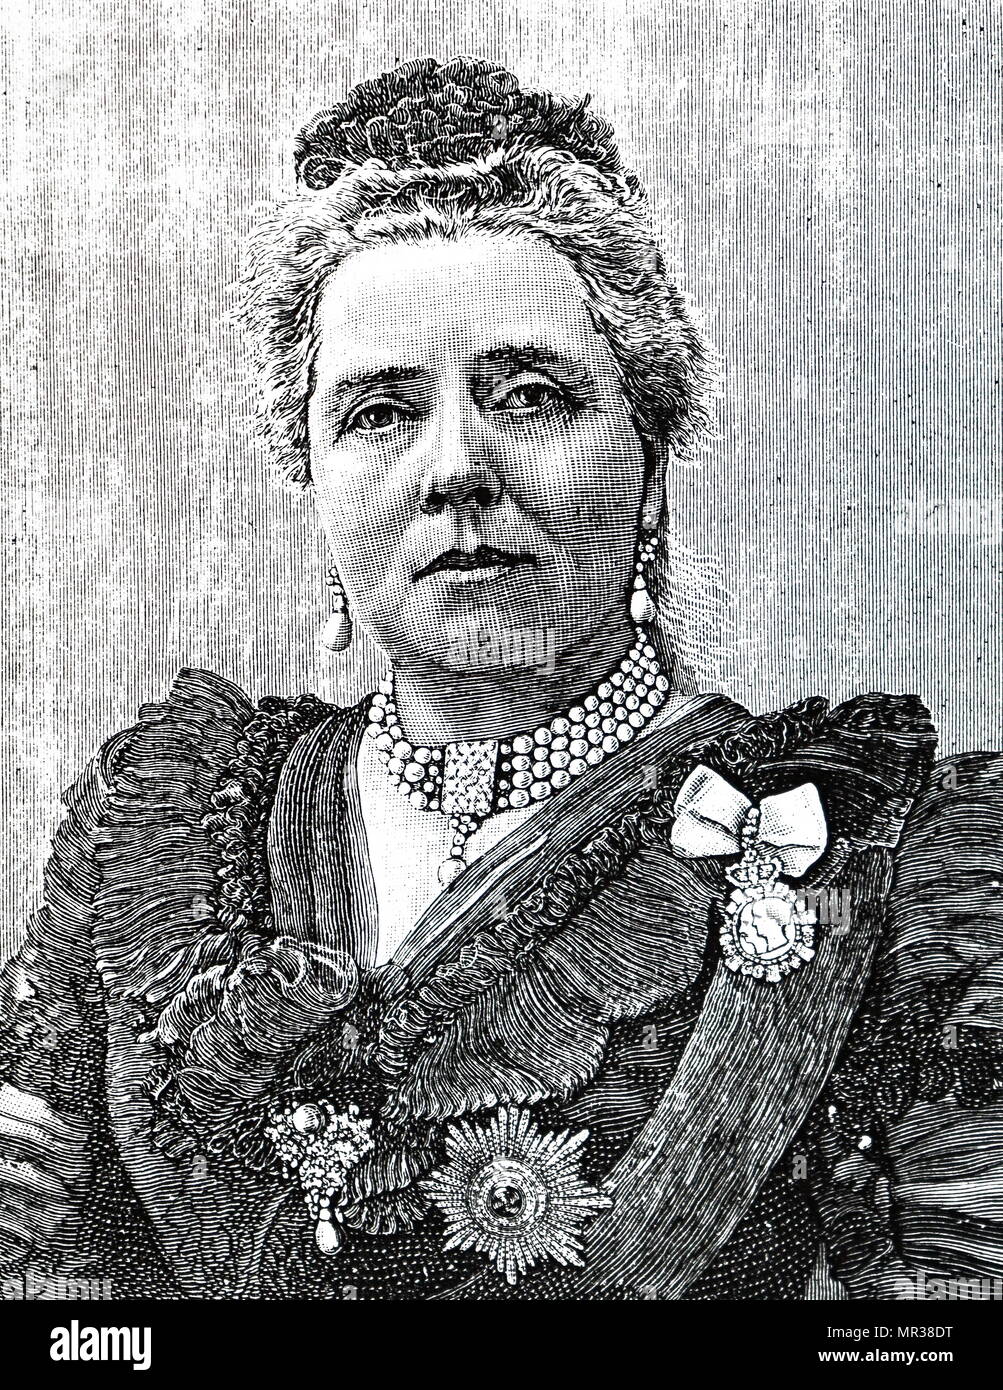 Portrait de Victoria, princesse royale (1840-1901) a été l'Impératrice allemande et Reine de Prusse par mariage à l'empereur allemand Frédéric III. En date du 19e siècle Banque D'Images